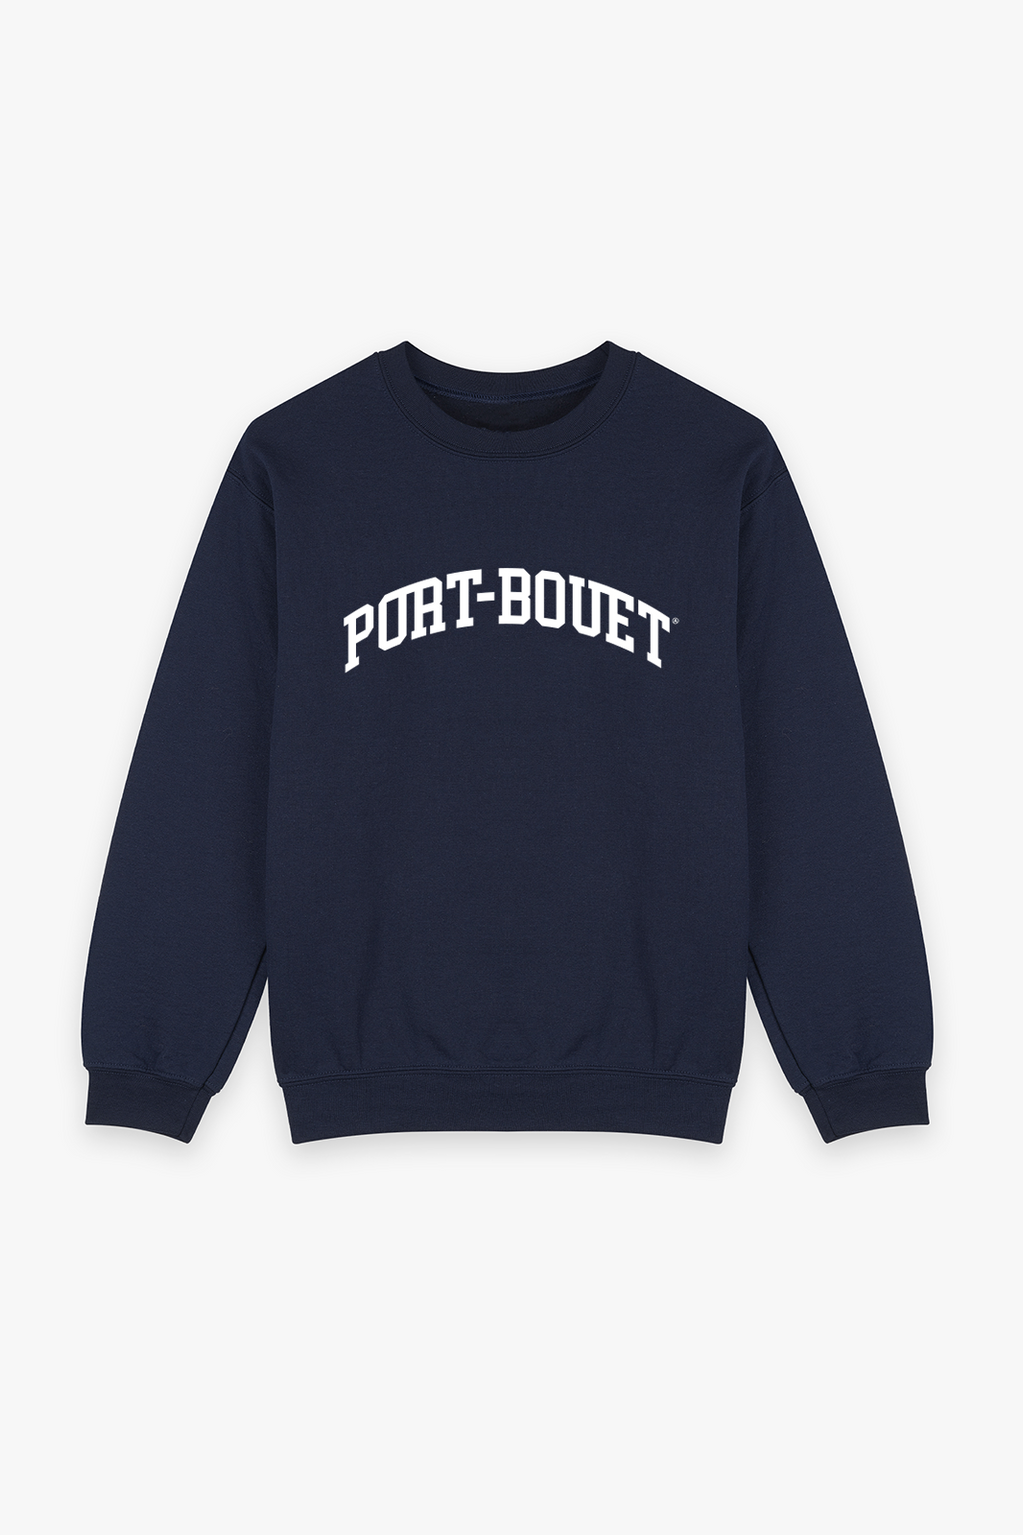 Port-Bouet Sweatshirt Navy